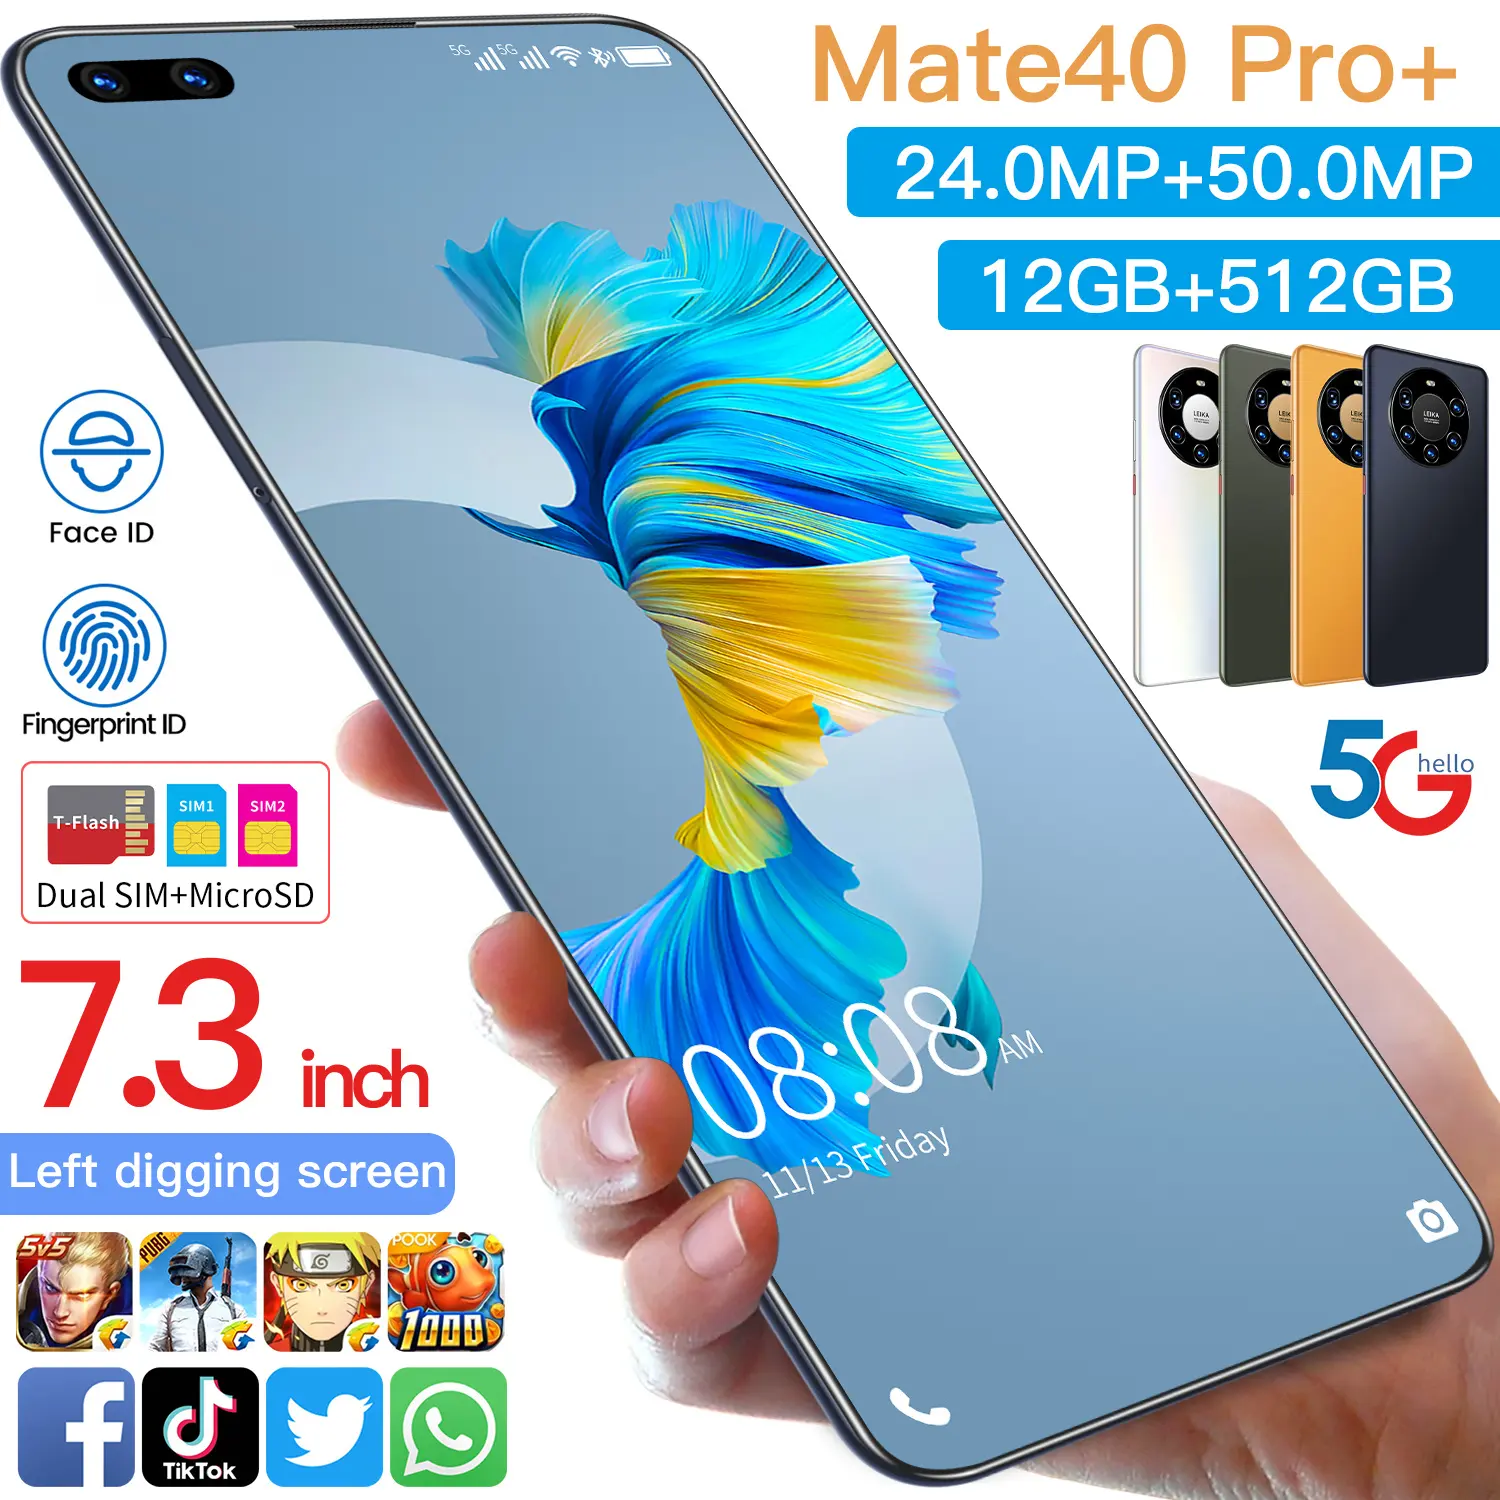 Venda quente Mate 40 Pro + Original 12gb + 512gb 24mp + 50mp Desbloqueio Facial Tela Completa Android 10.0 Celular Celular Inteligente